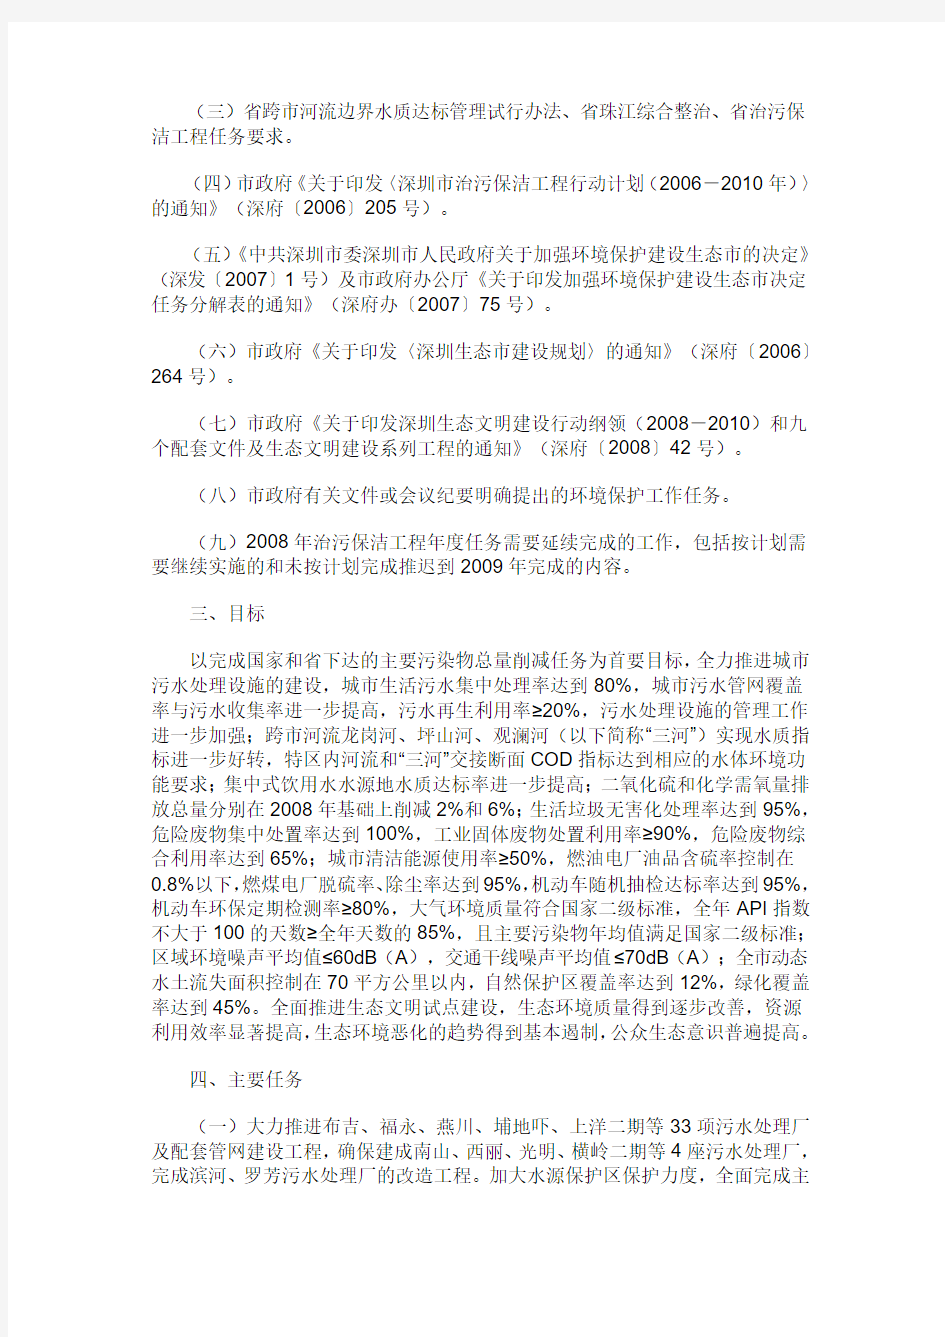 深圳市人民政府办公厅关于印发2009年深圳市实施治污保洁工程主要目标及任务分解方案的通知